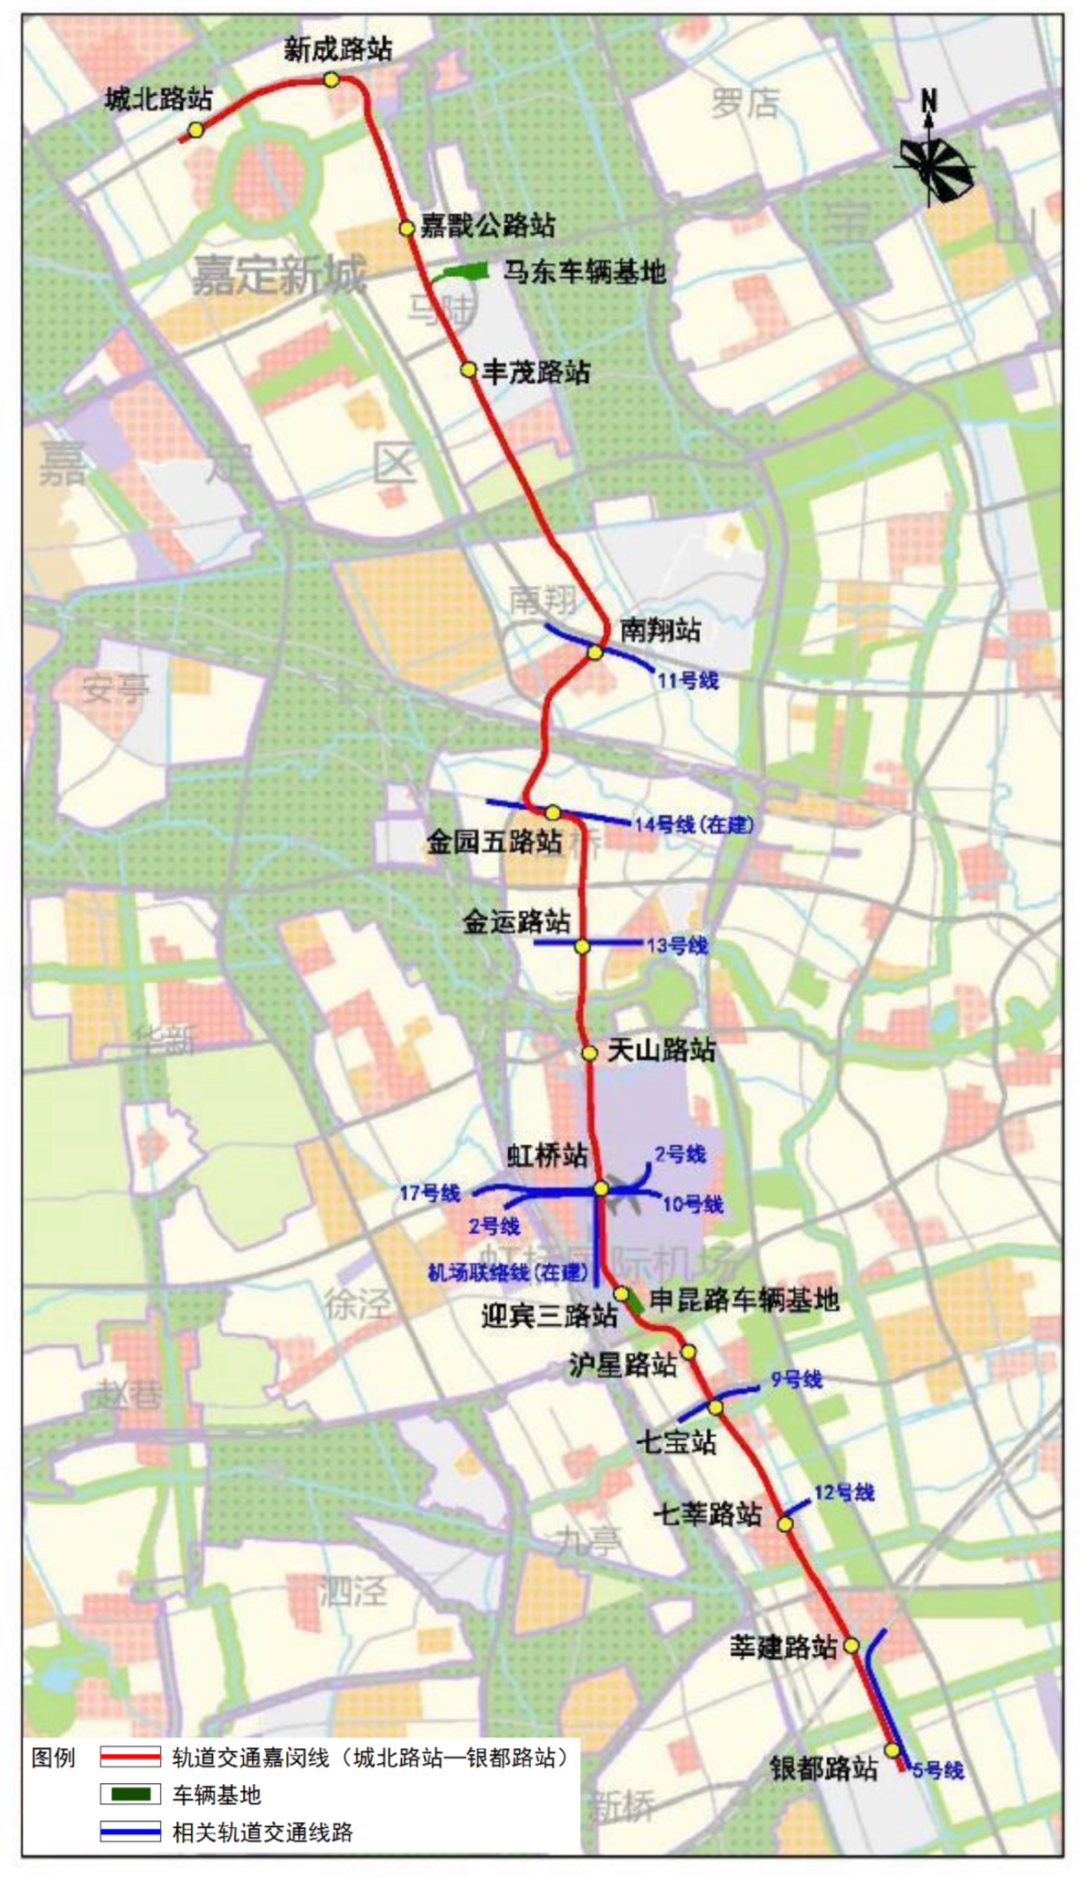 上海轨交嘉闵线城北路站银都路站选线专项规划草案公示